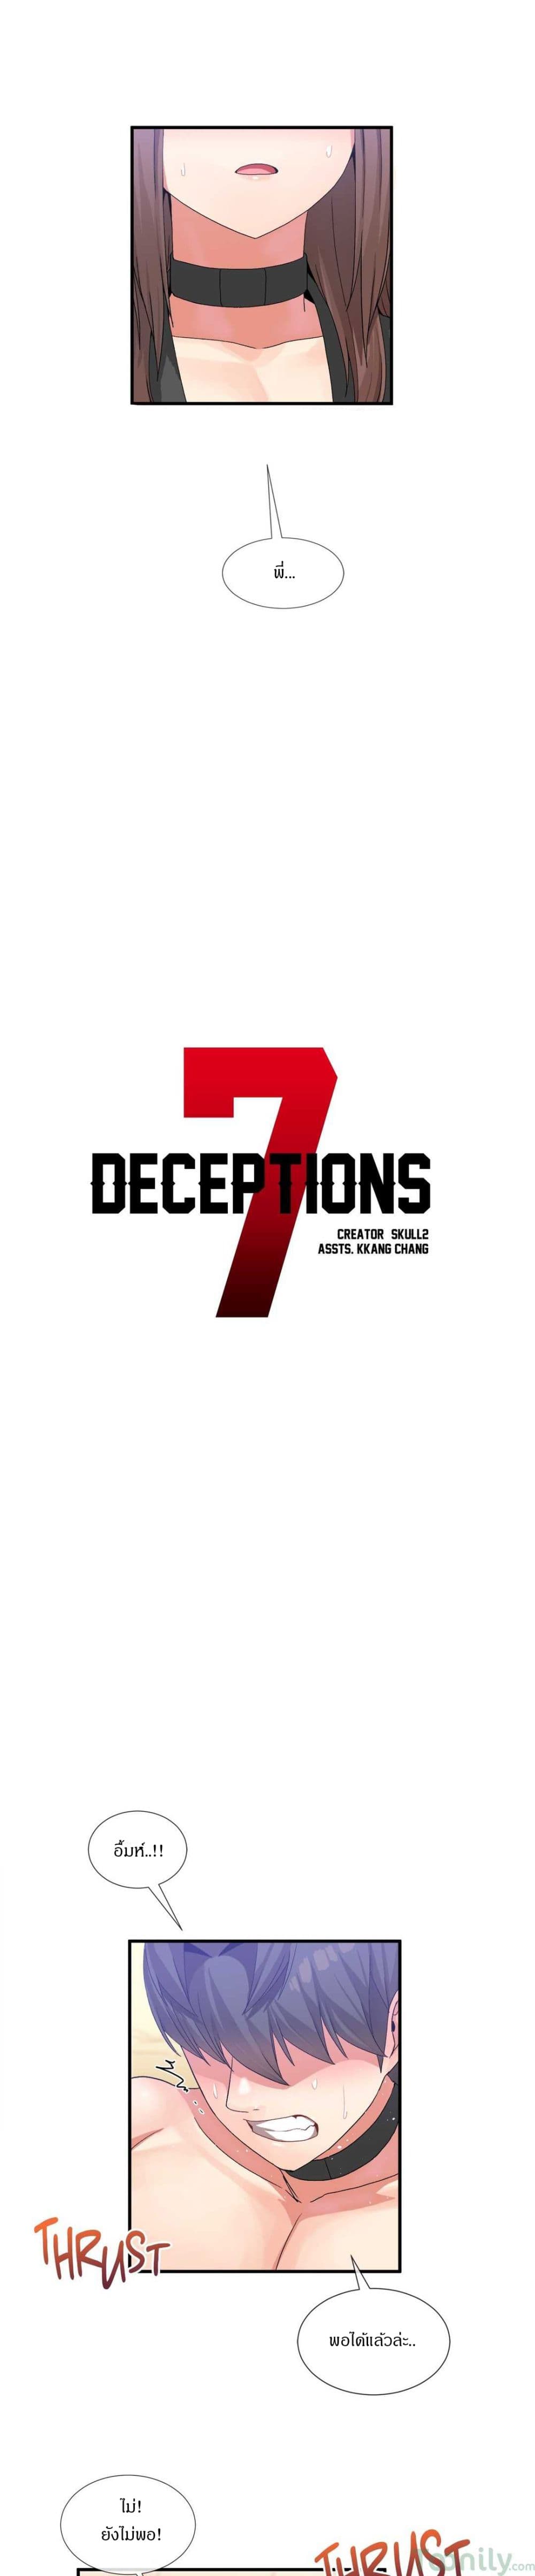 Deceptions 20 (9)